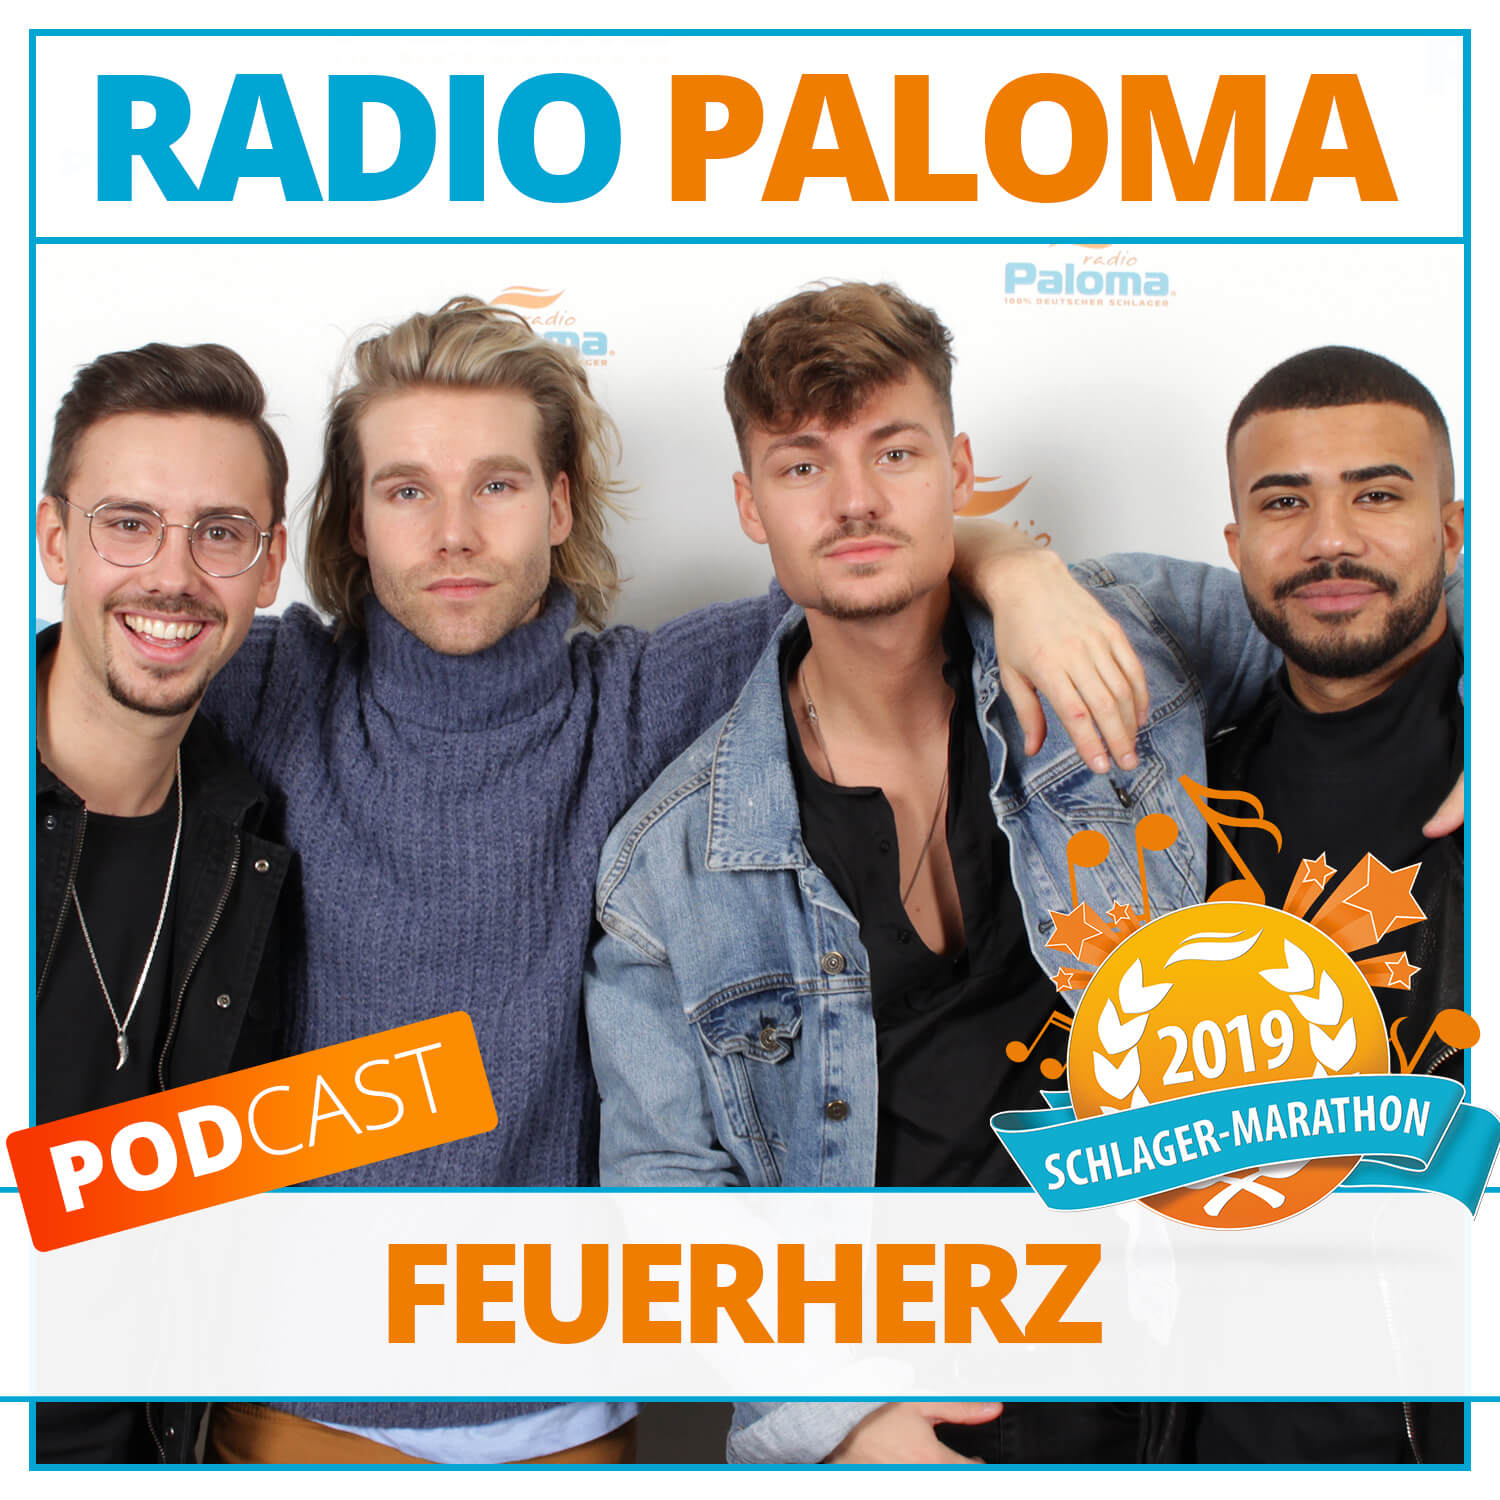 Der Radio Paloma Schlager-Marathon 2019 mit Feuerherz